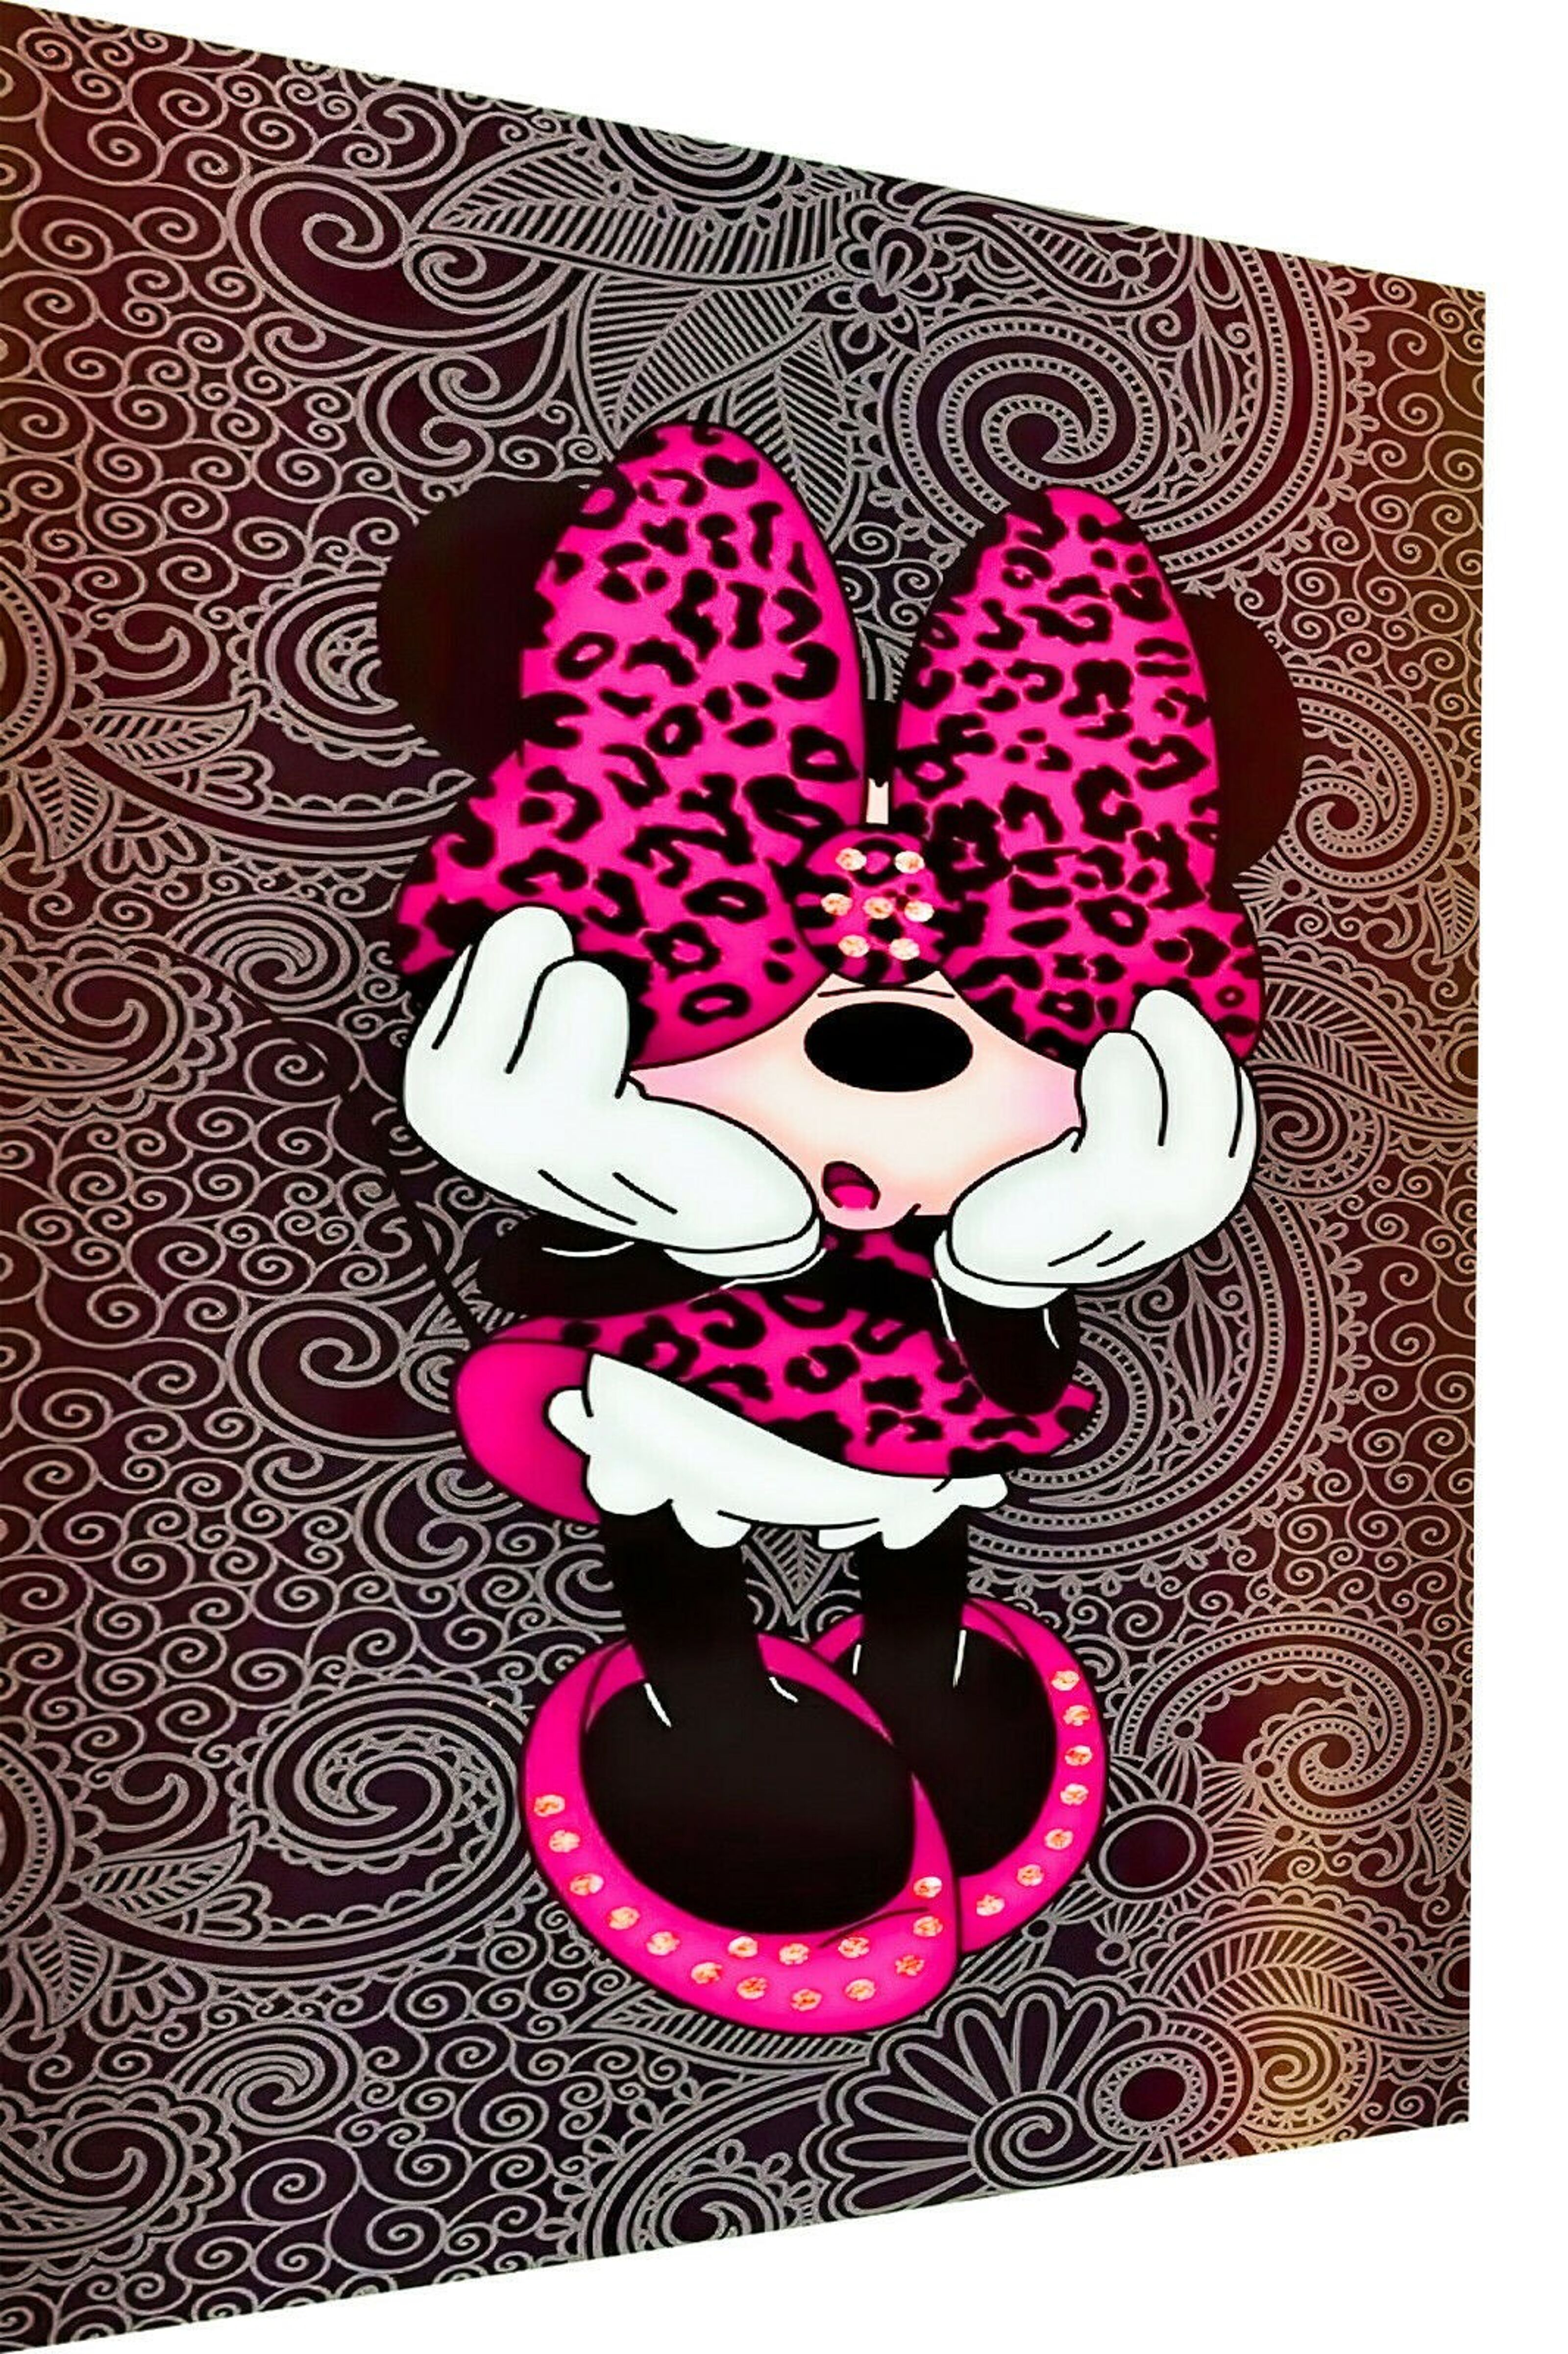 Tableau peinture Minnie 100 x 70 cm Pop Art - Magic mouse